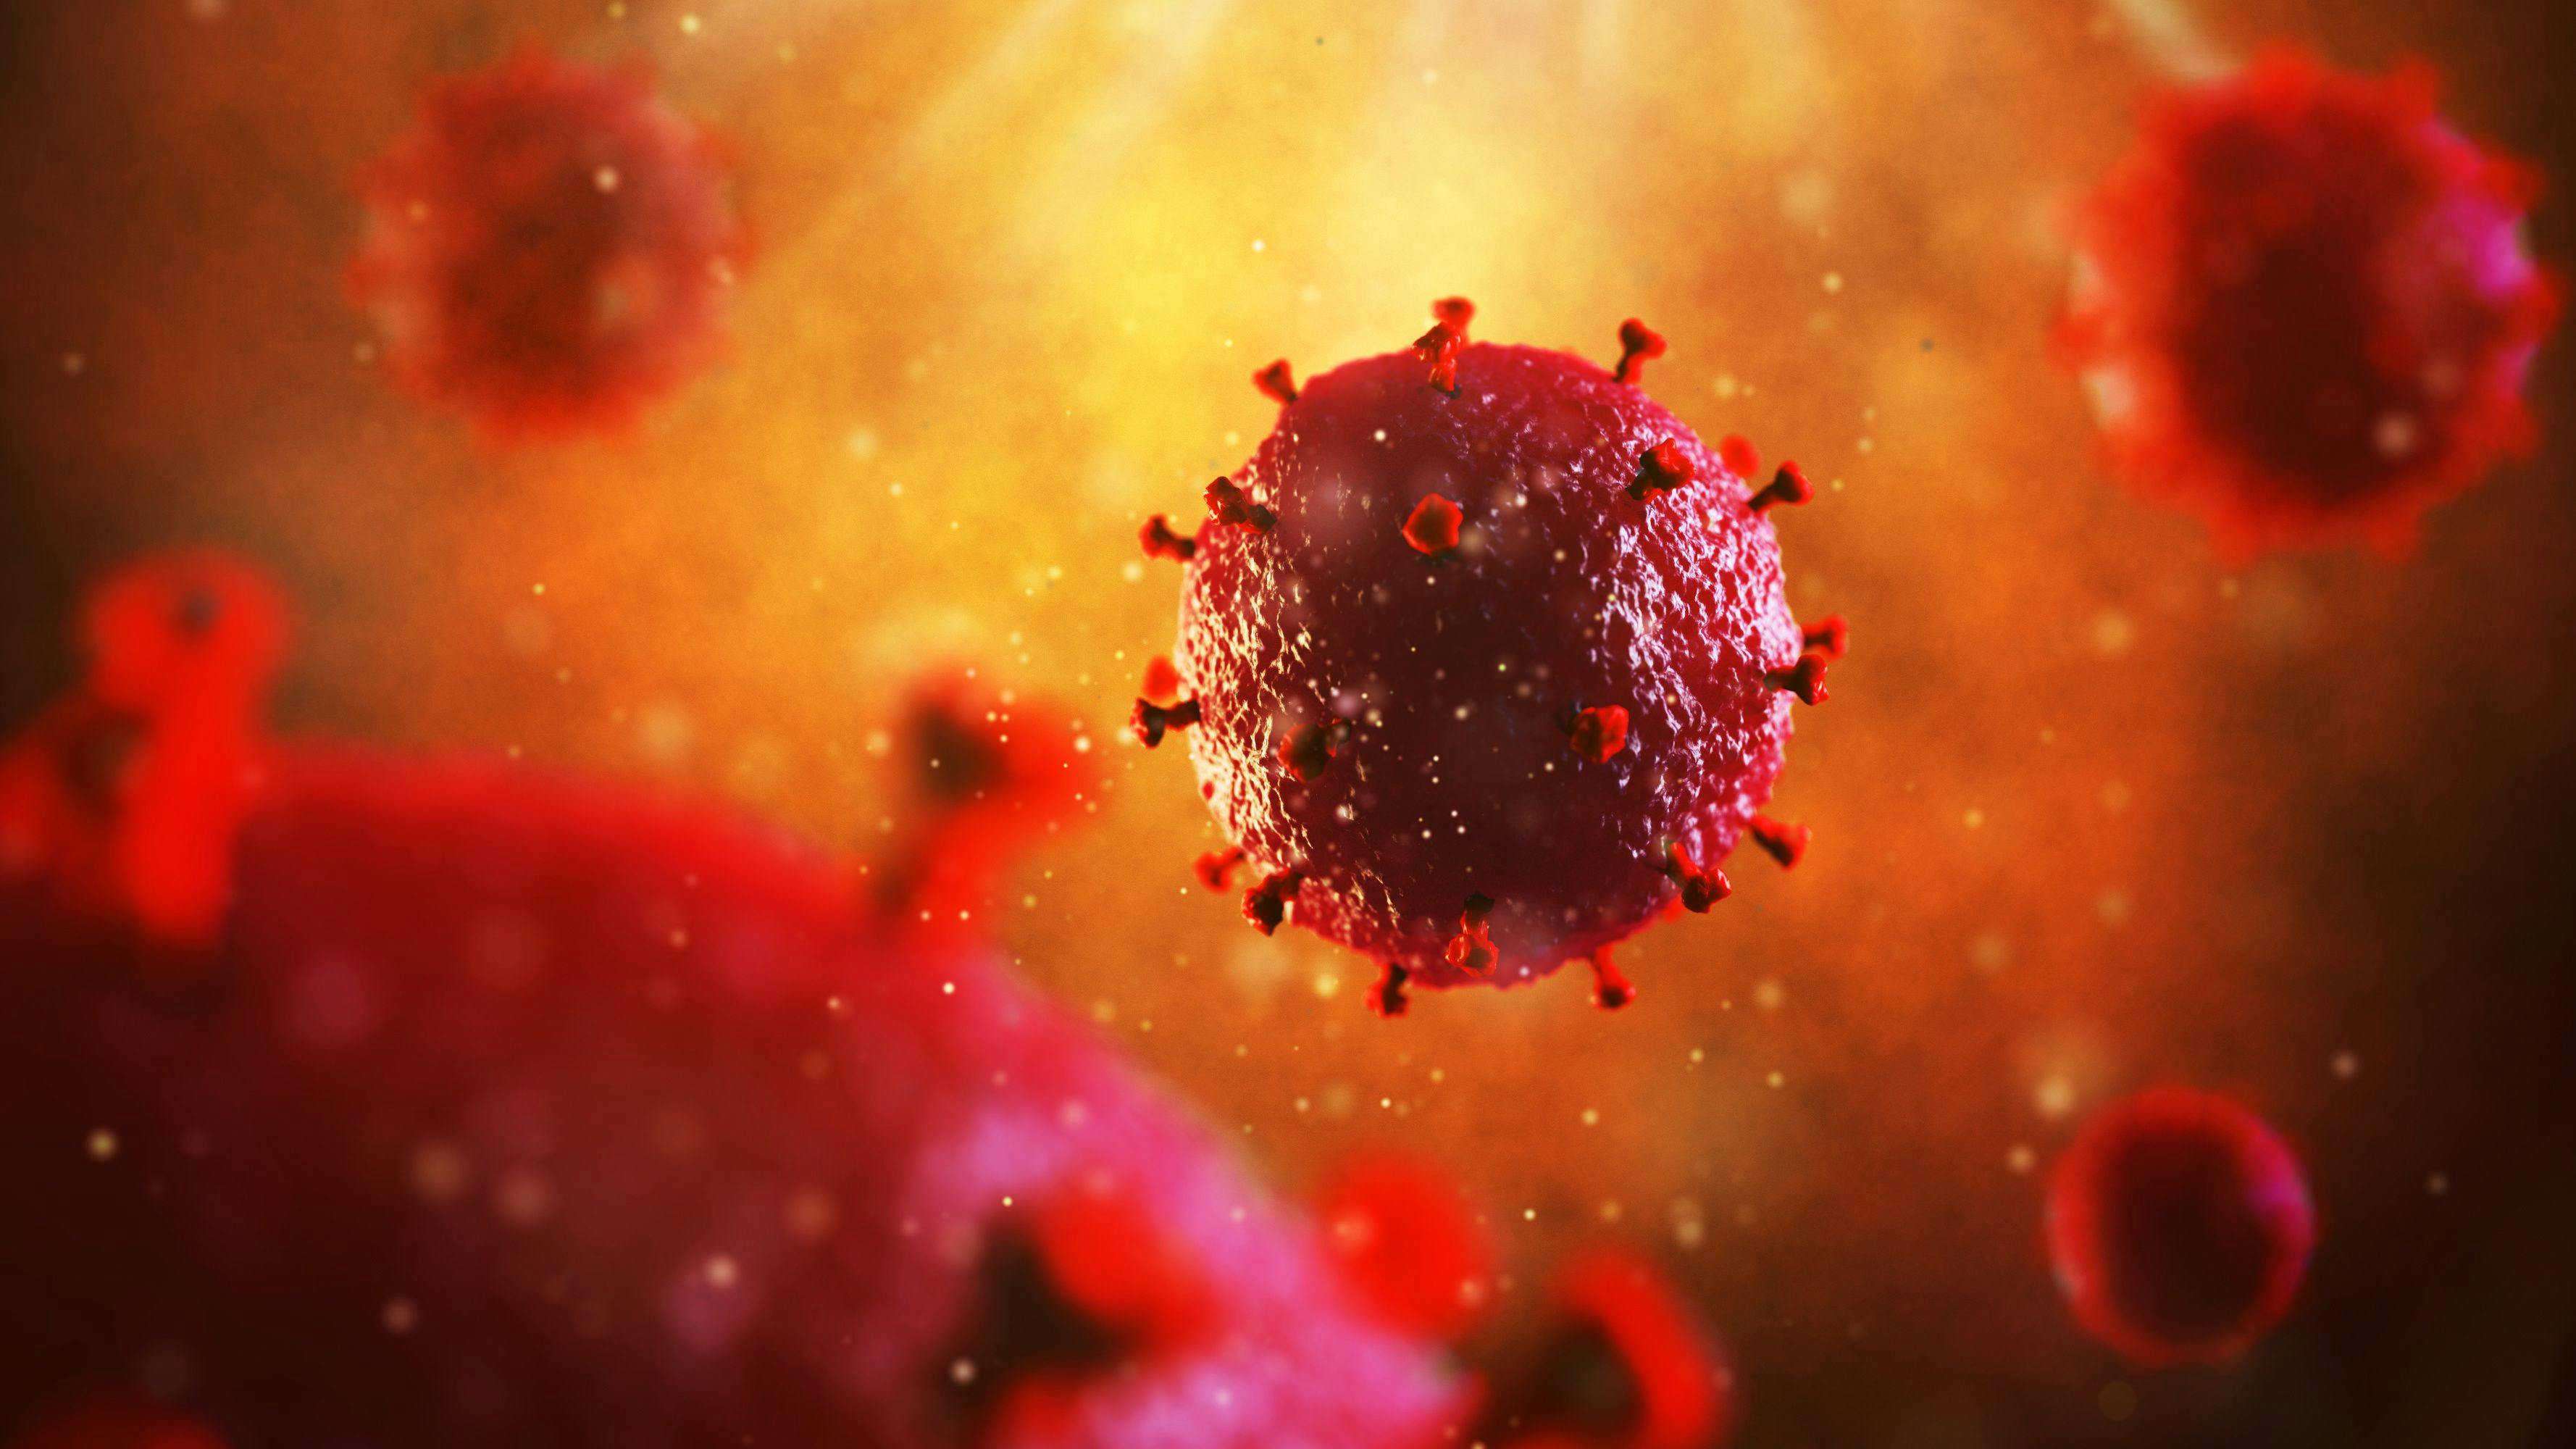 3d illustration of HIV virus. Medical concept | Image Credit: artegorov3@gmail - stock.adobe.com